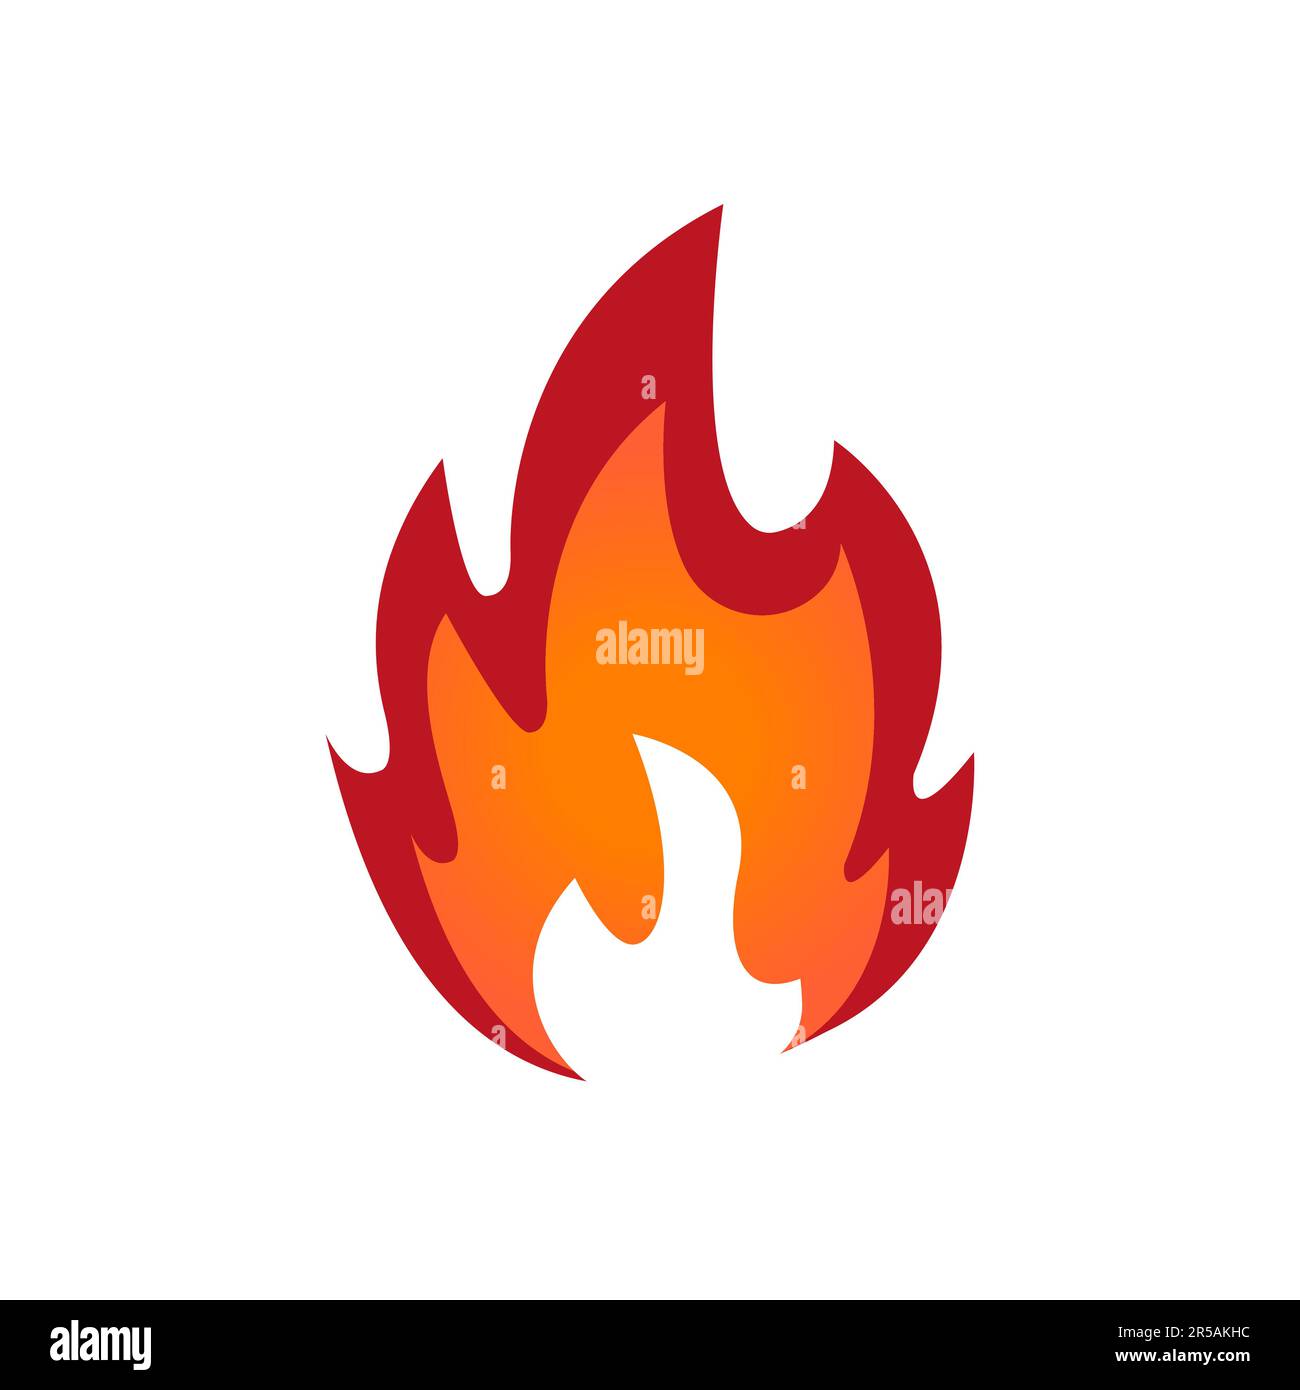 Brennende Flamme, feuerfestes Zeichen isoliertes Blaze-Symbol. Vektor brennt feurige Explosion, orangefarbener Feuerball, brennendes Feuer, inferno-Zündung. Stock Vektor